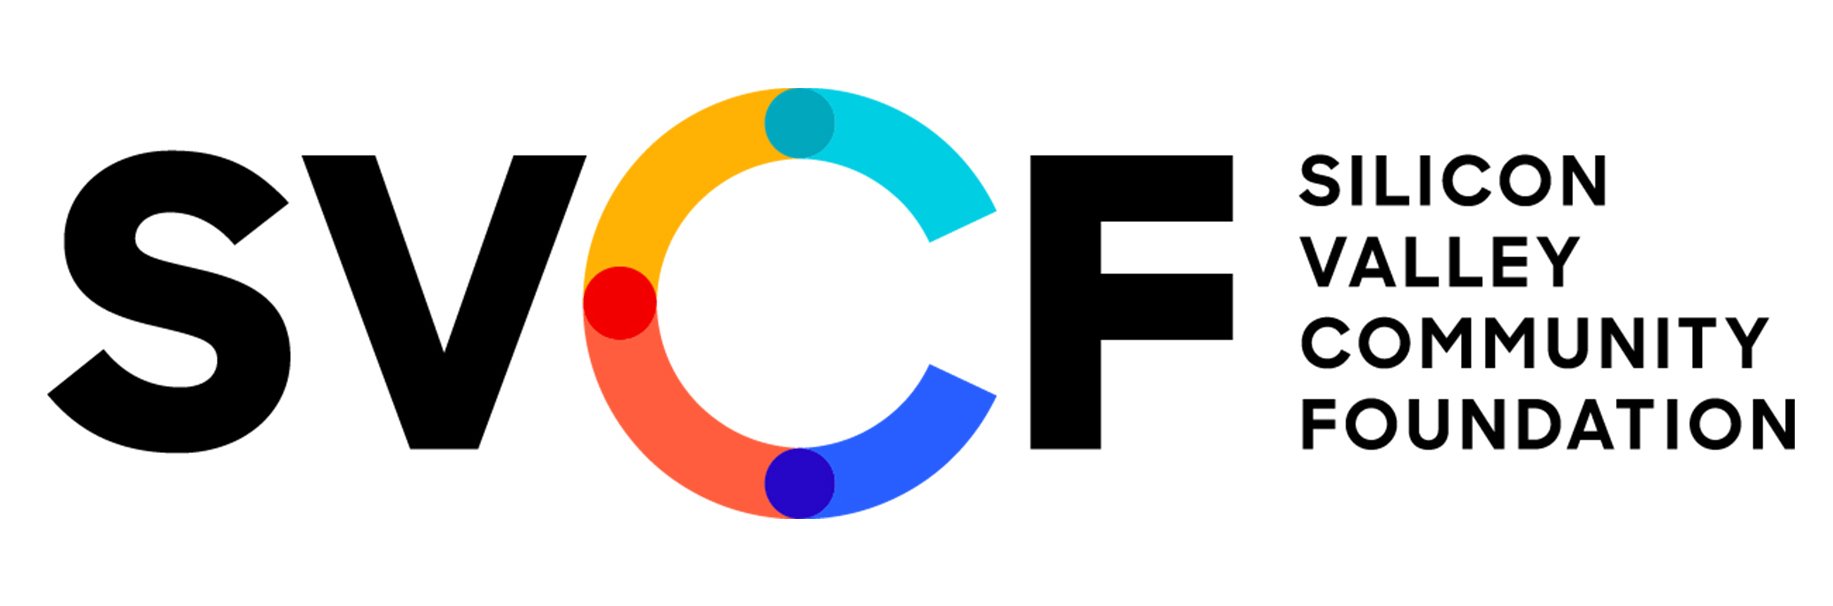 SVCF logo.jpg